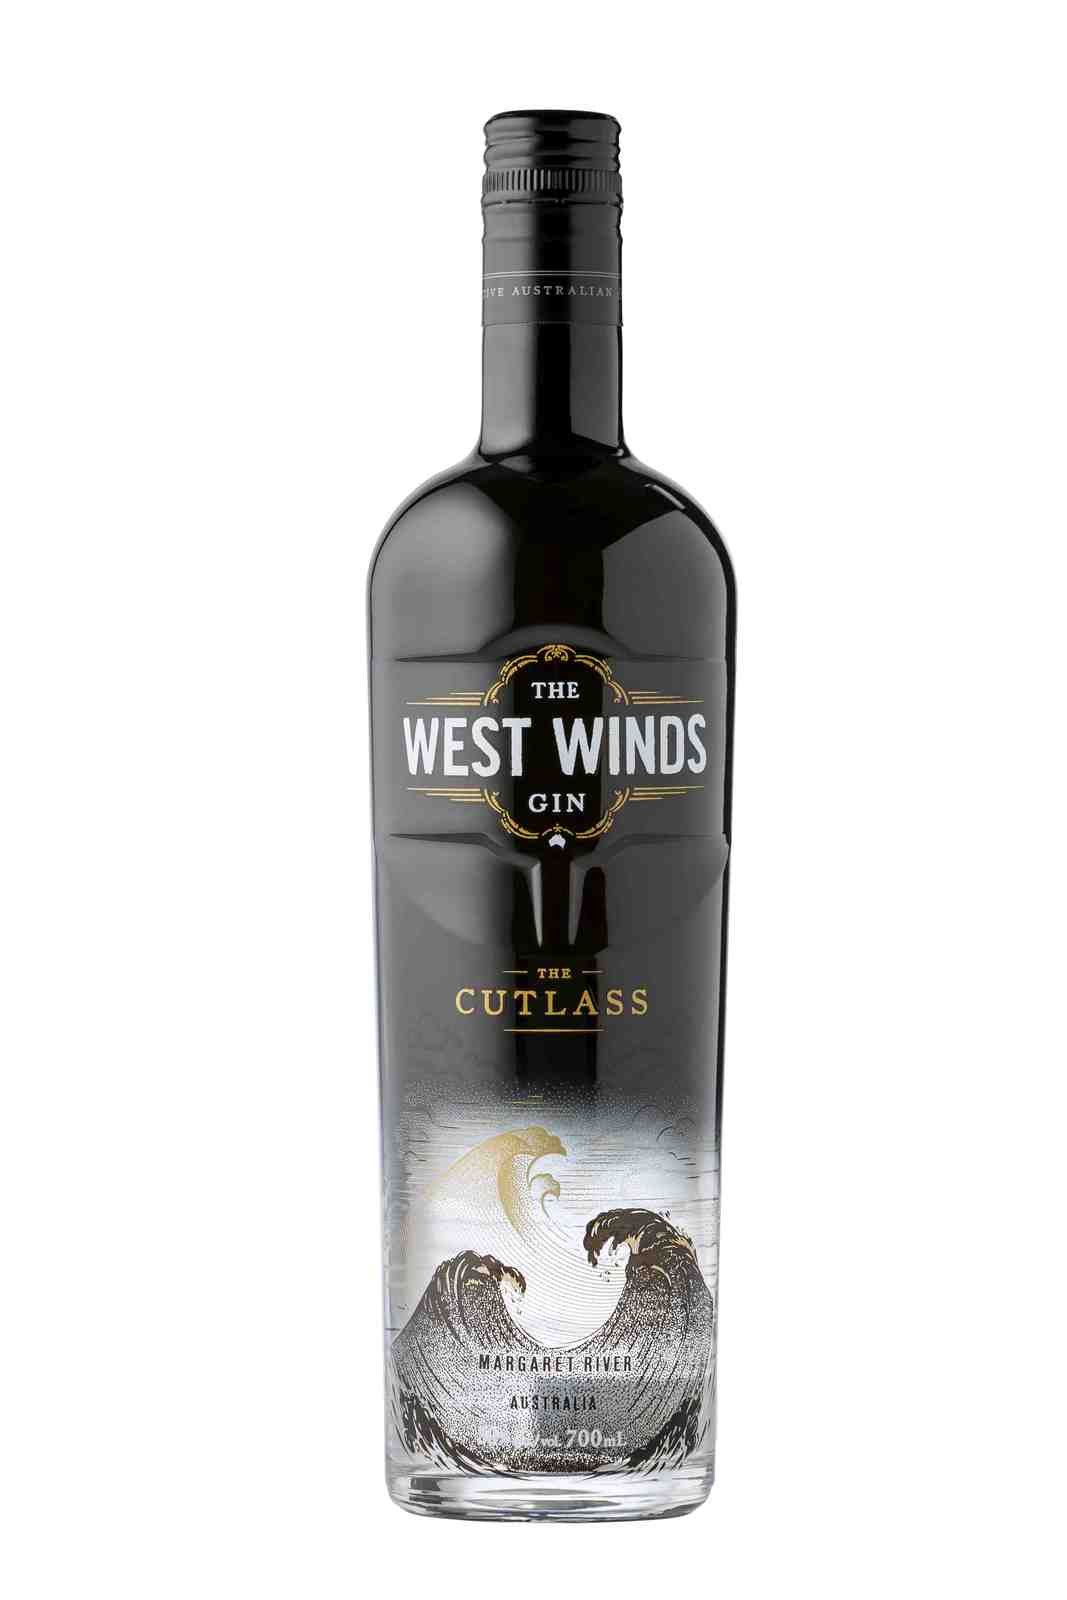 Wine Vins West Winds The Cutlass Gin